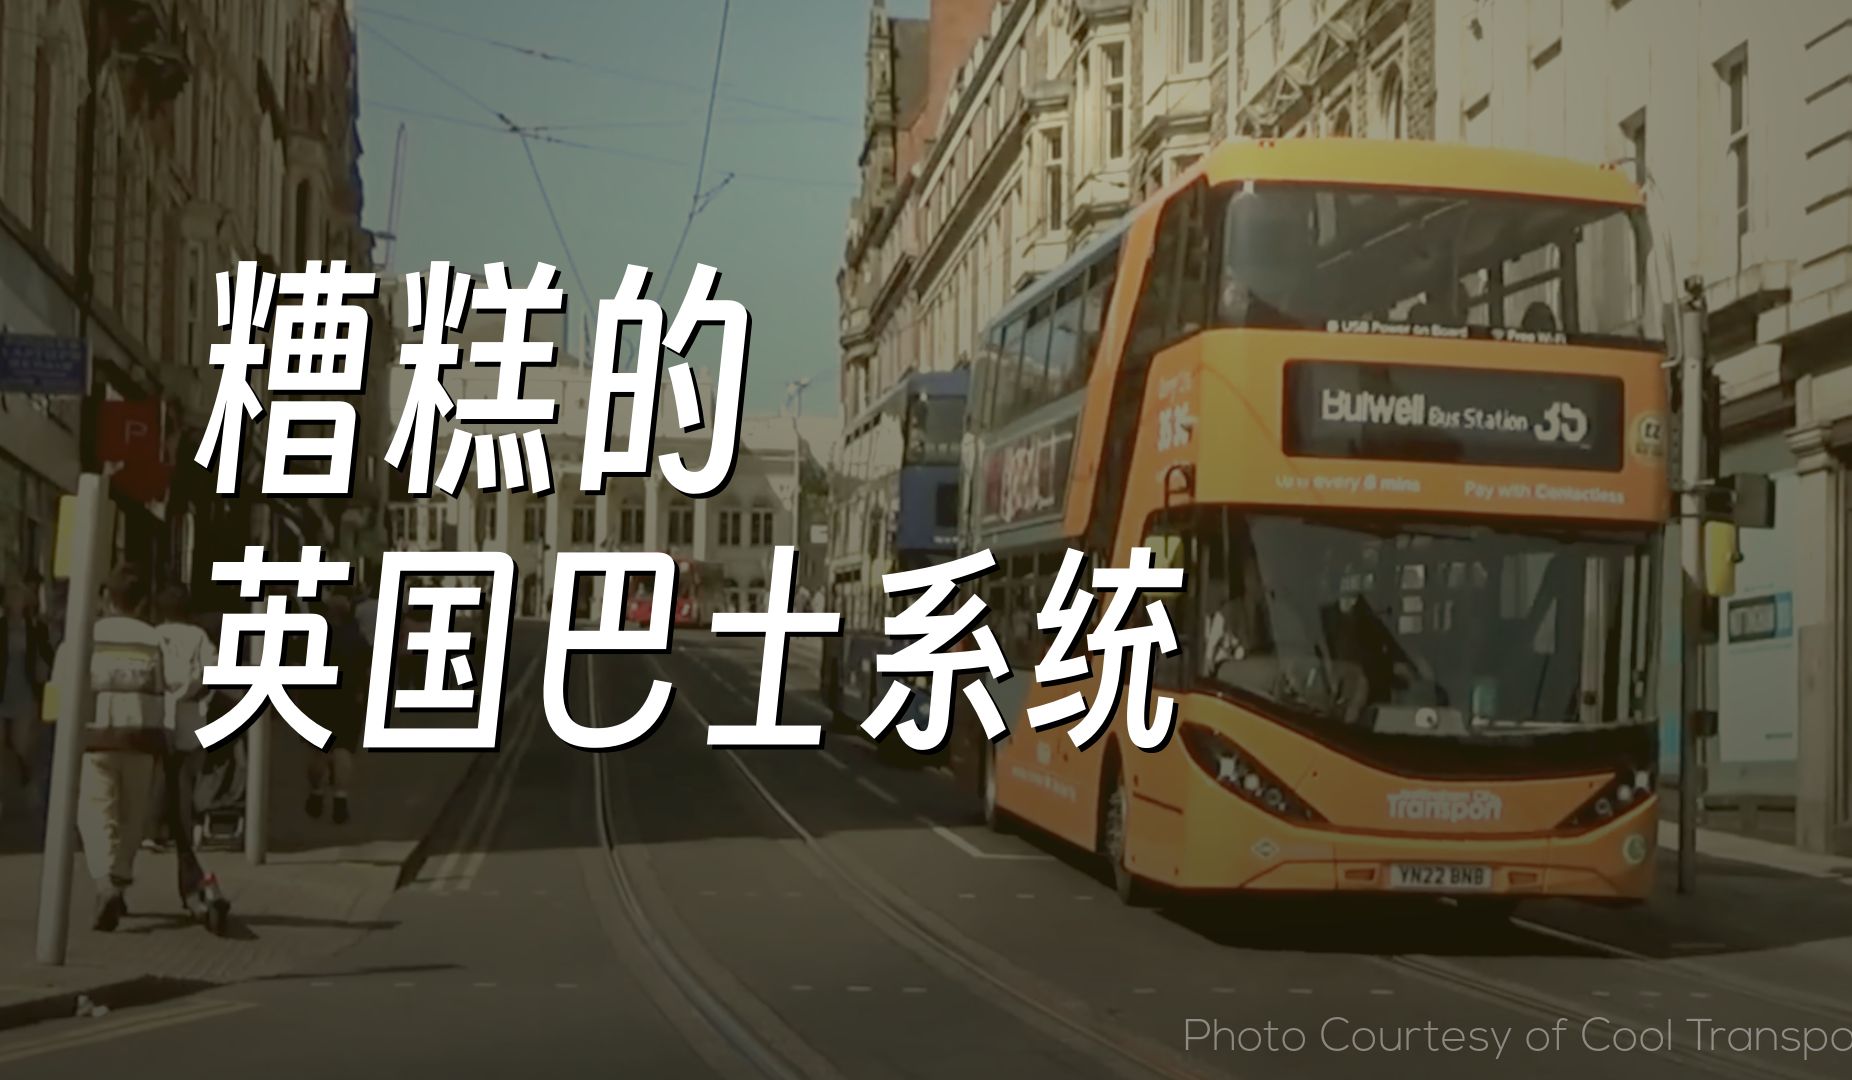 英国糟糕的巴士系统 | 官译人工中文字幕